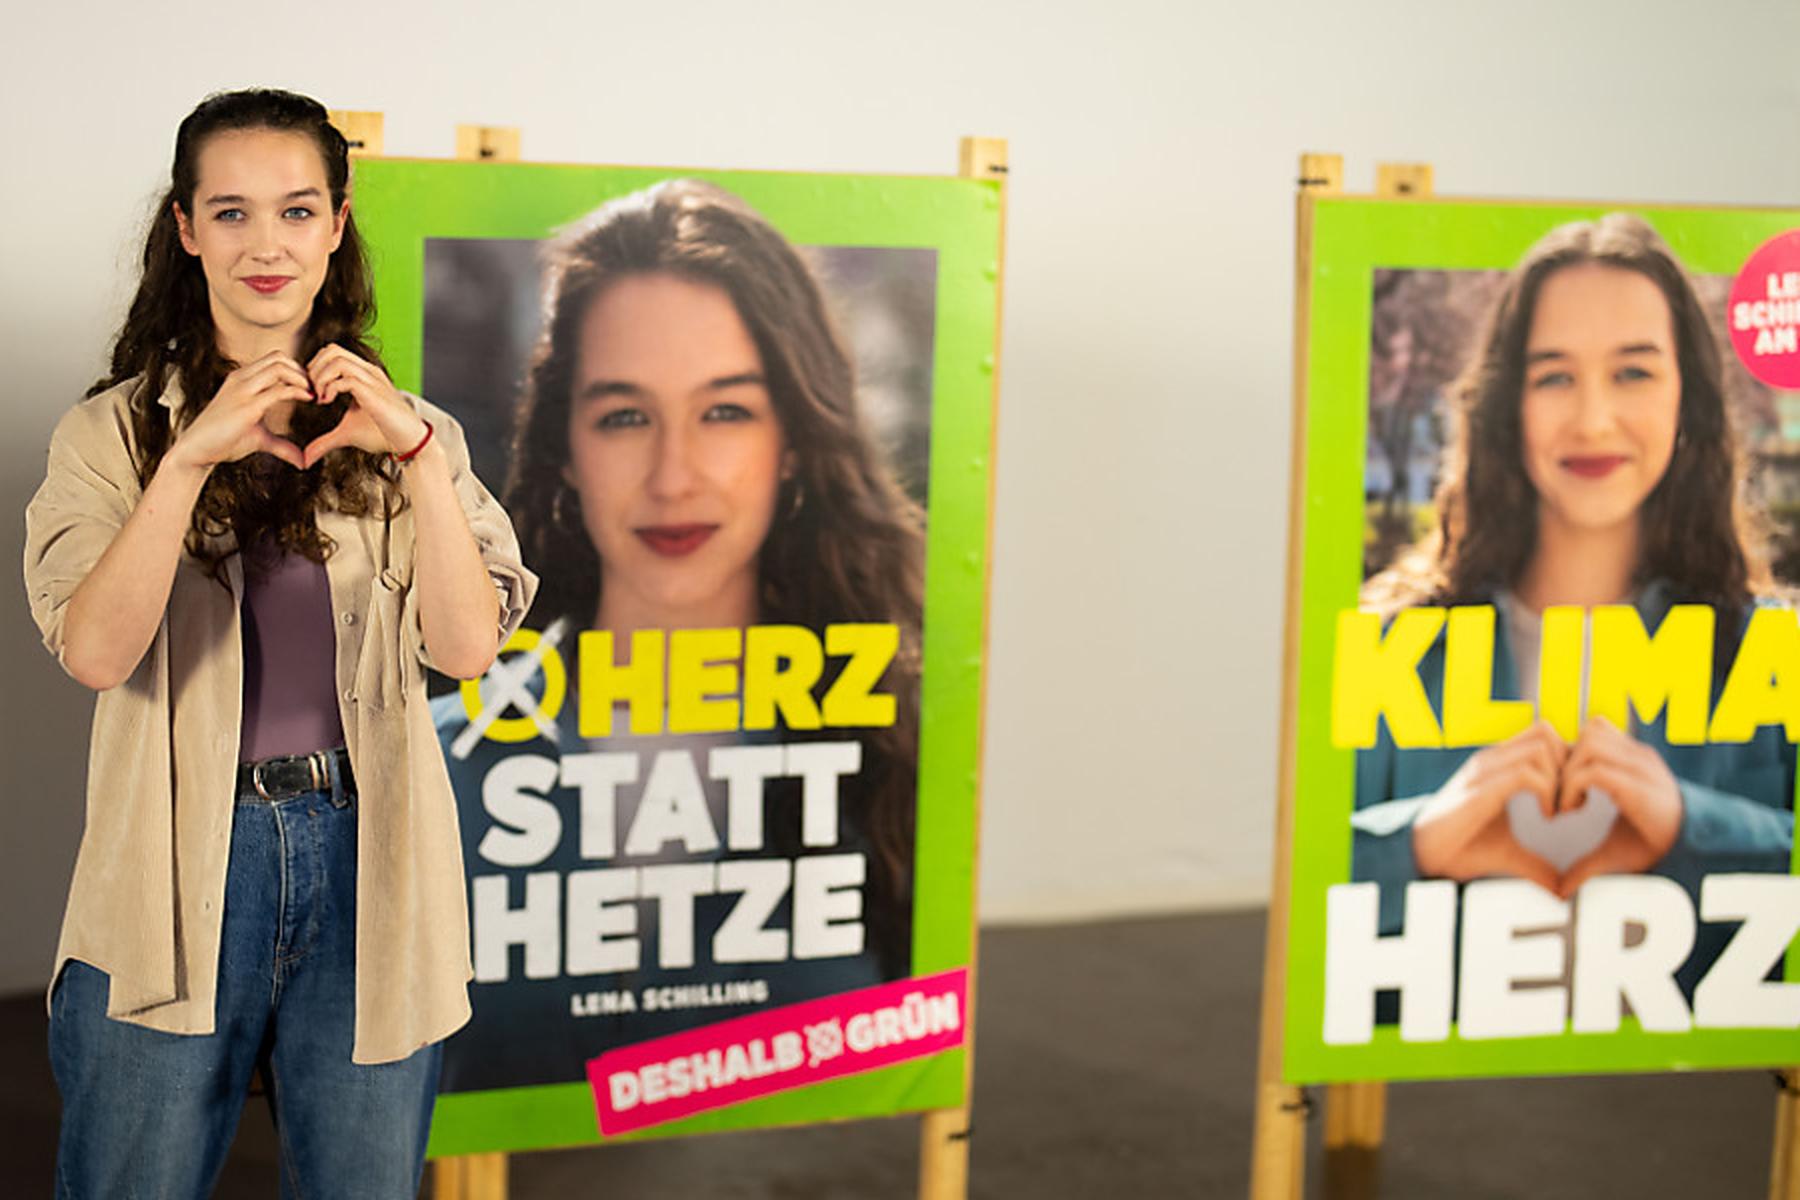 Wien: Grüne plakatieren Schilling mit viel Herz